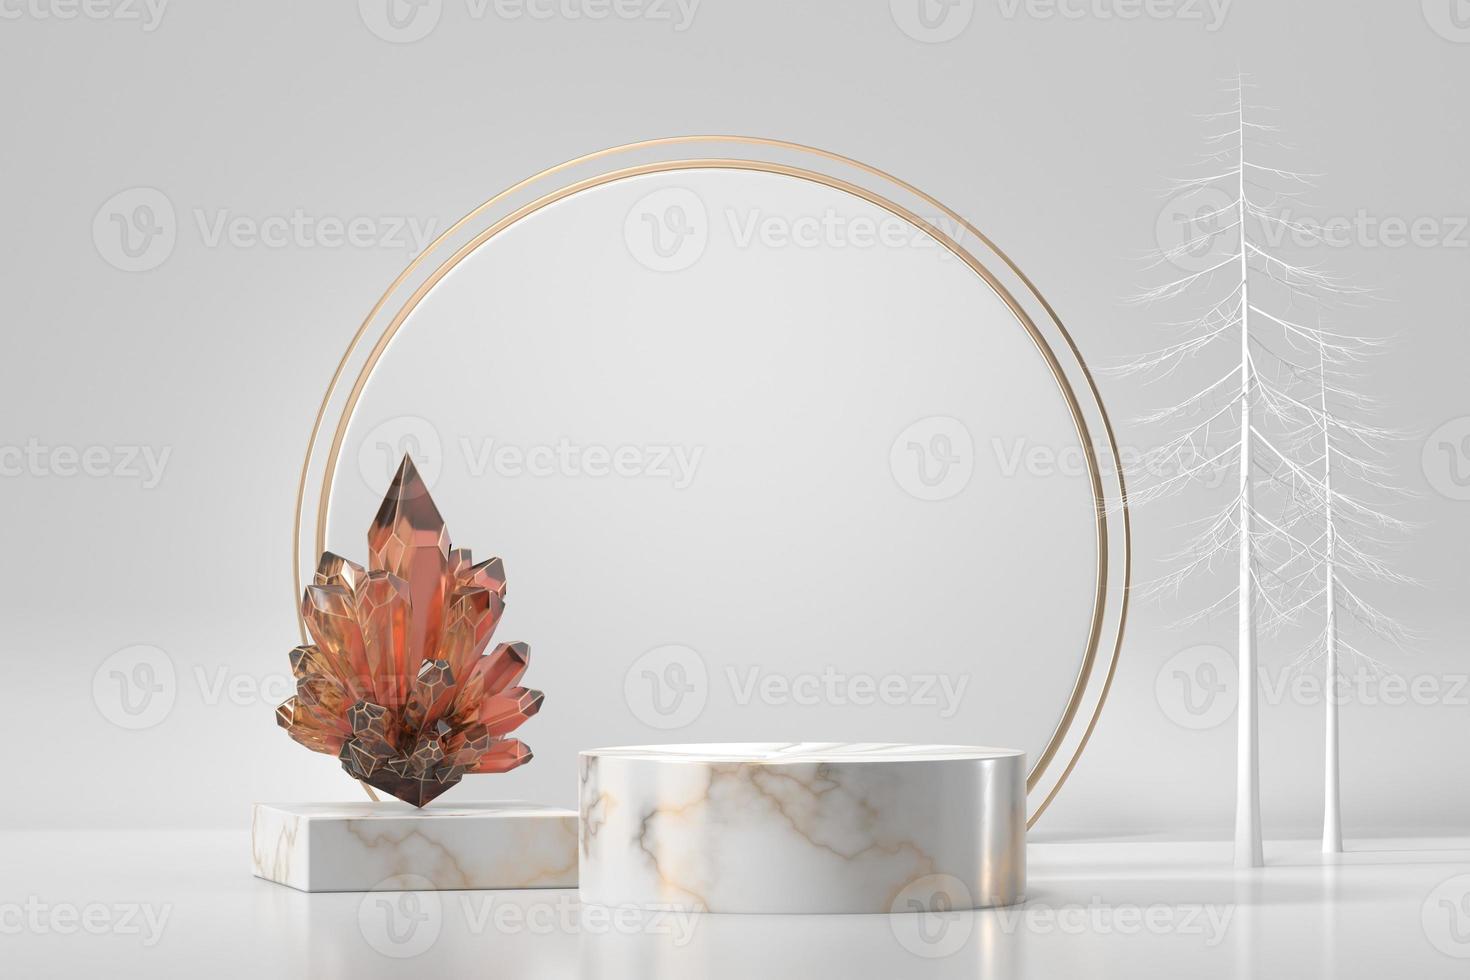 marmorpall för produktutställning med kristall i vit bakgrund, rendering 3d foto